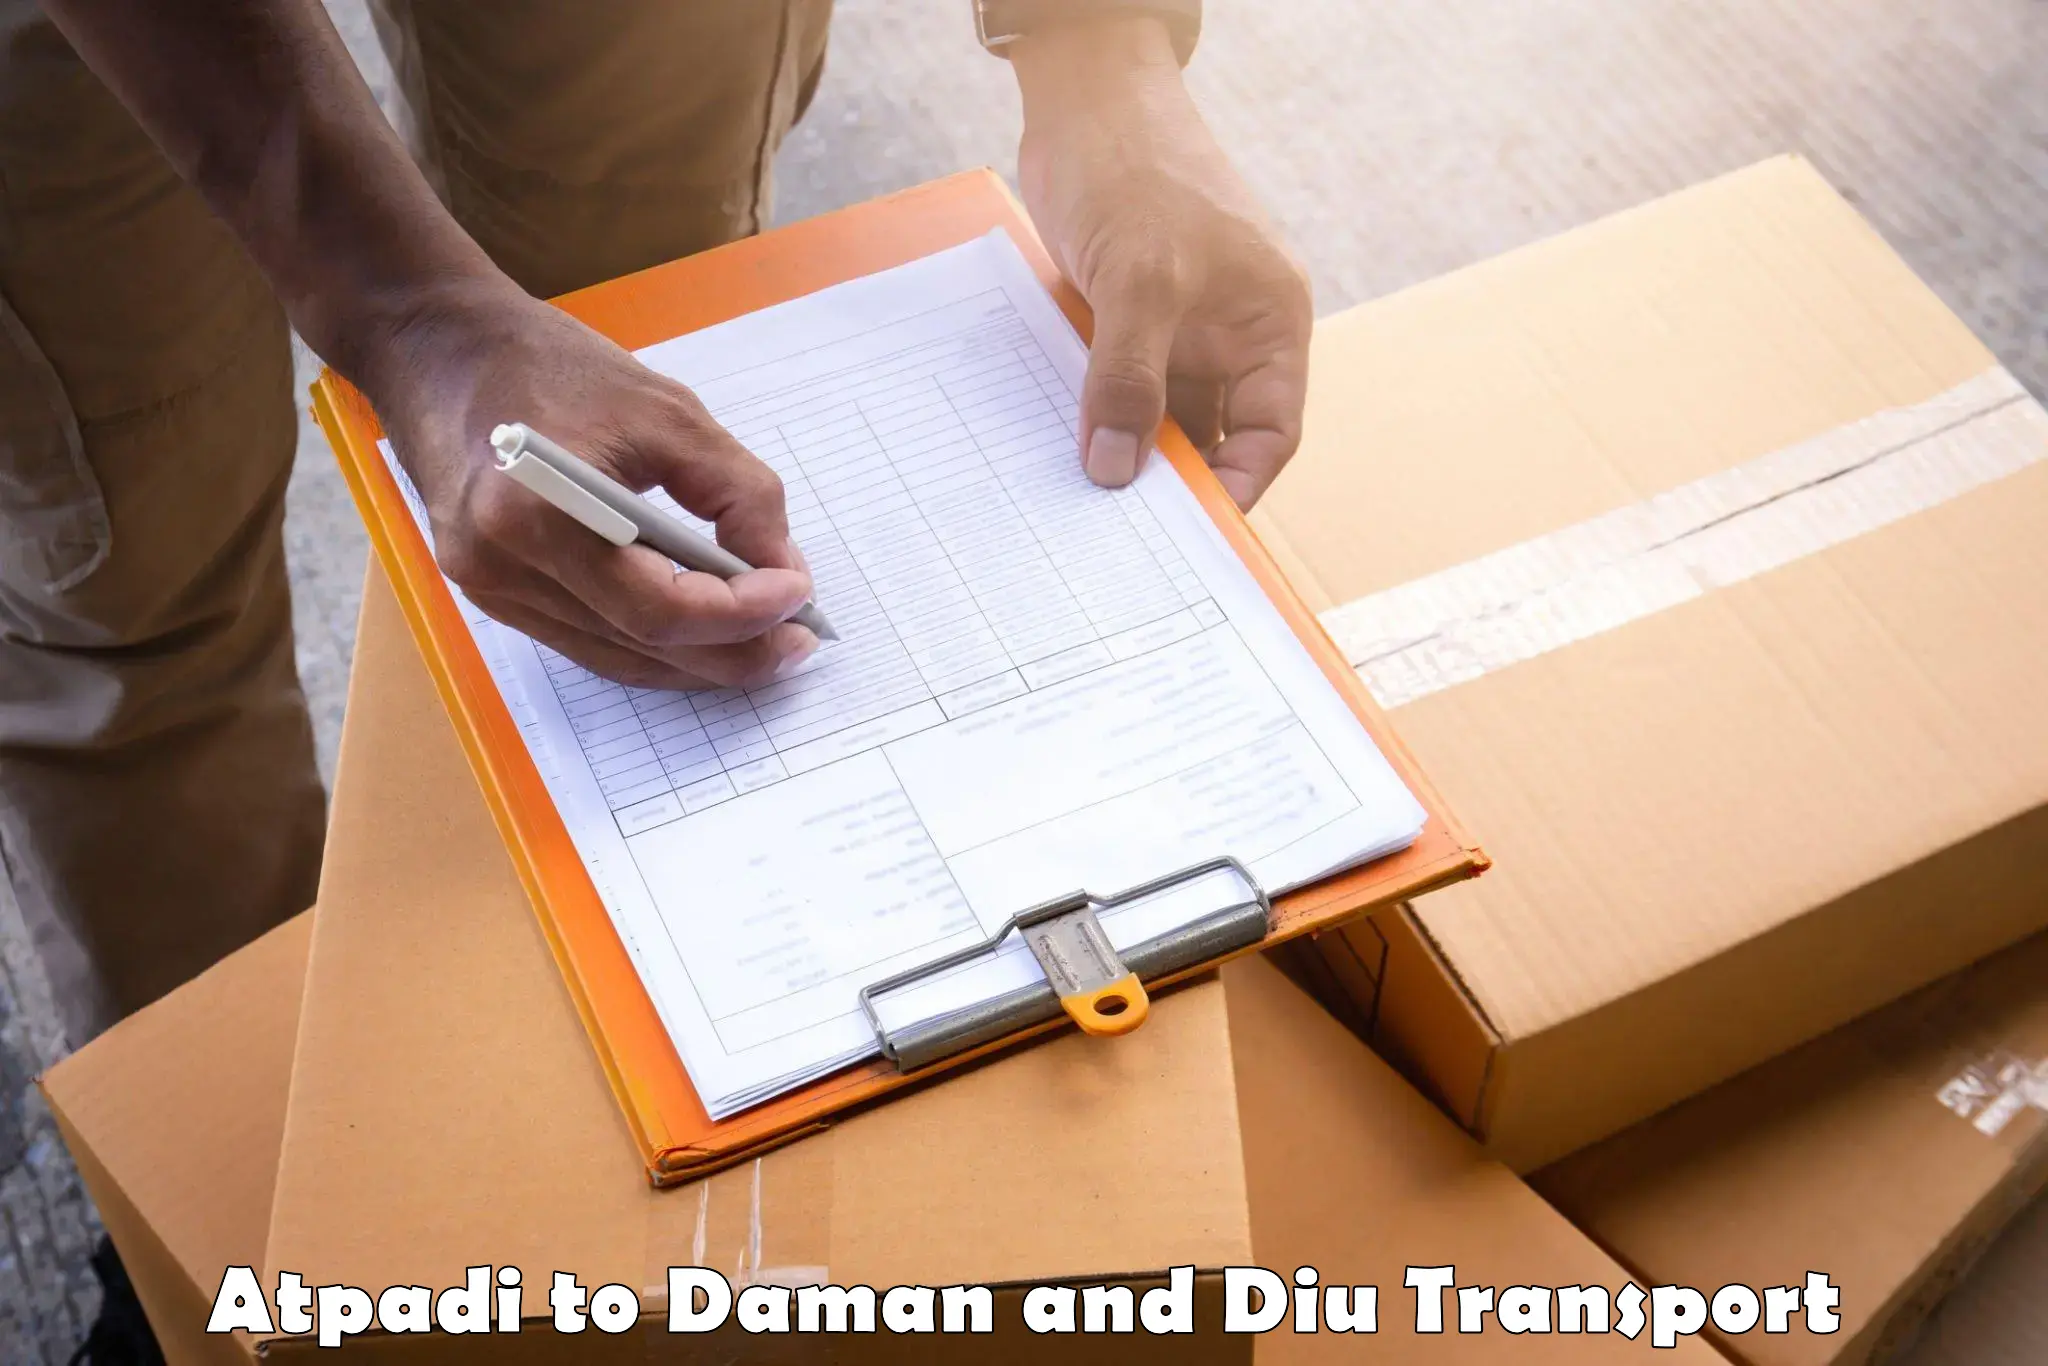 All India transport service Atpadi to Daman and Diu